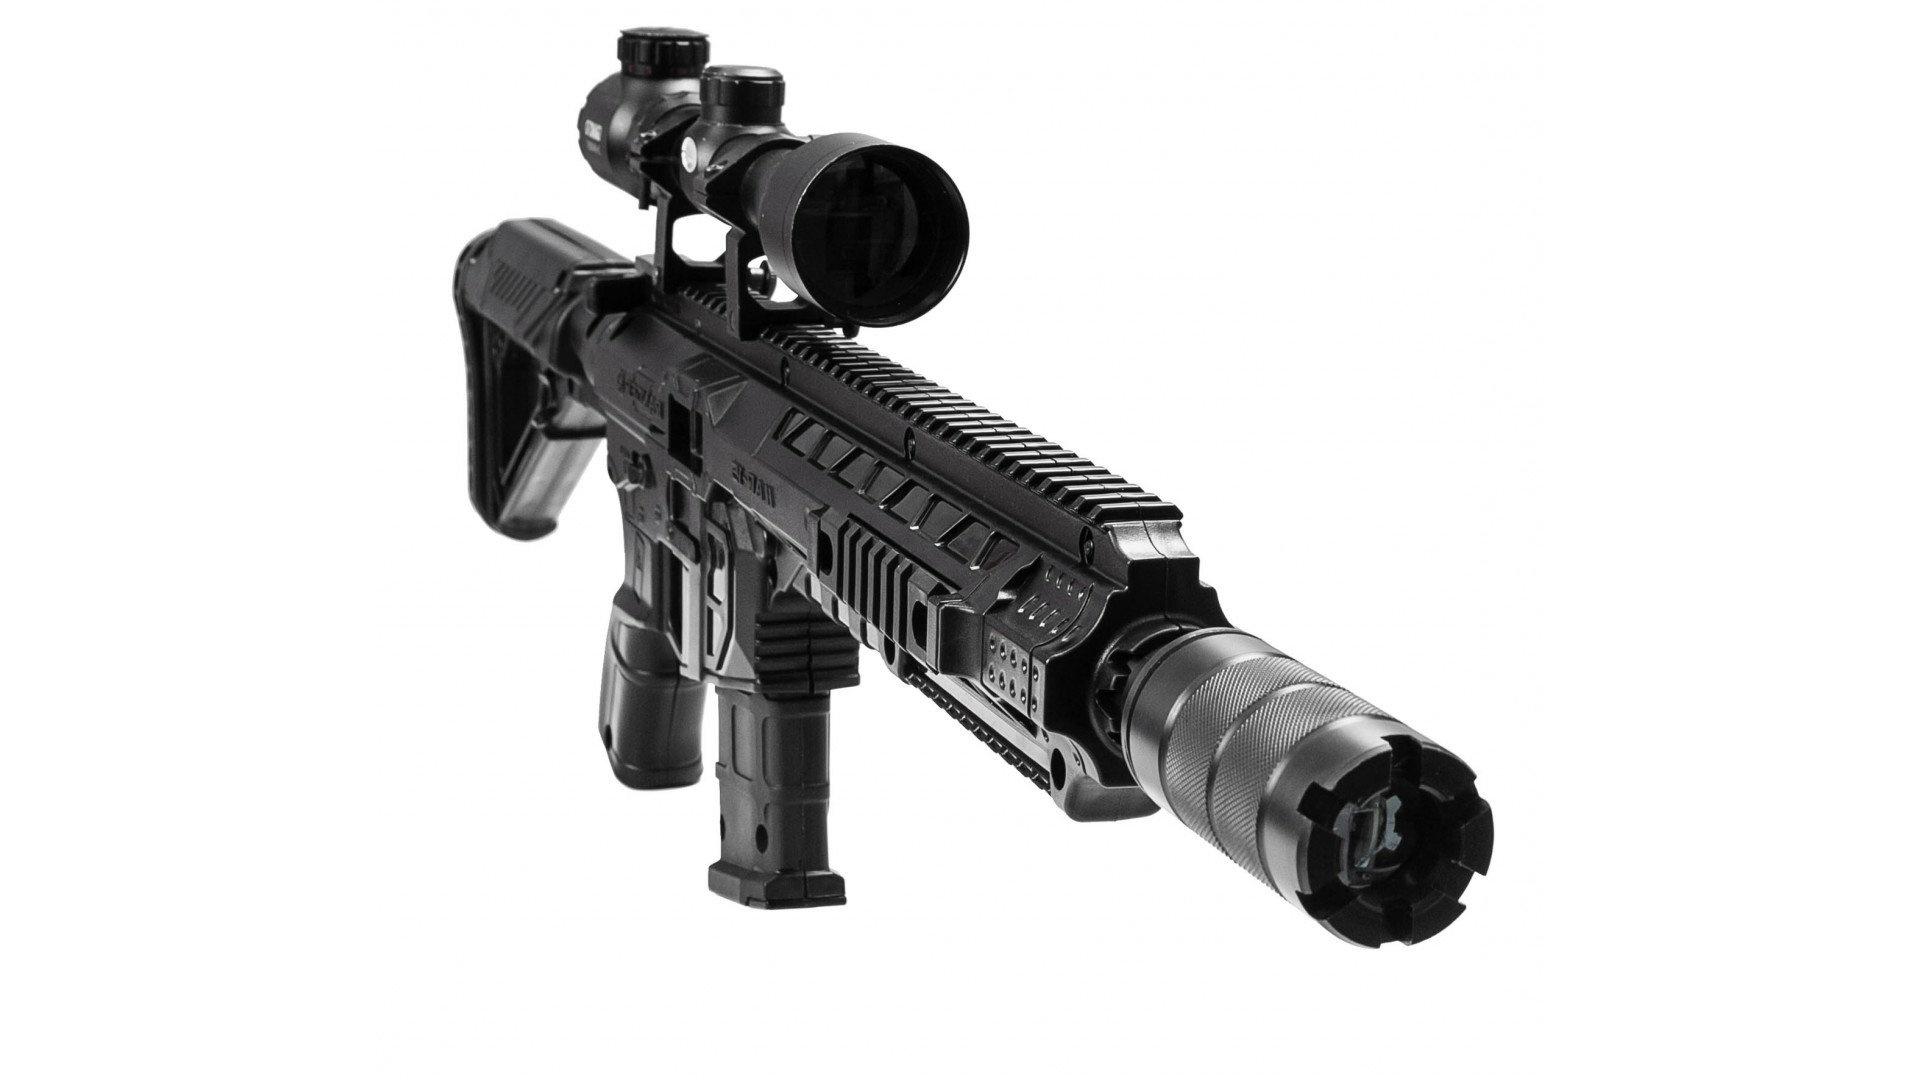 SR21 Berserk lasertag sniper rifle